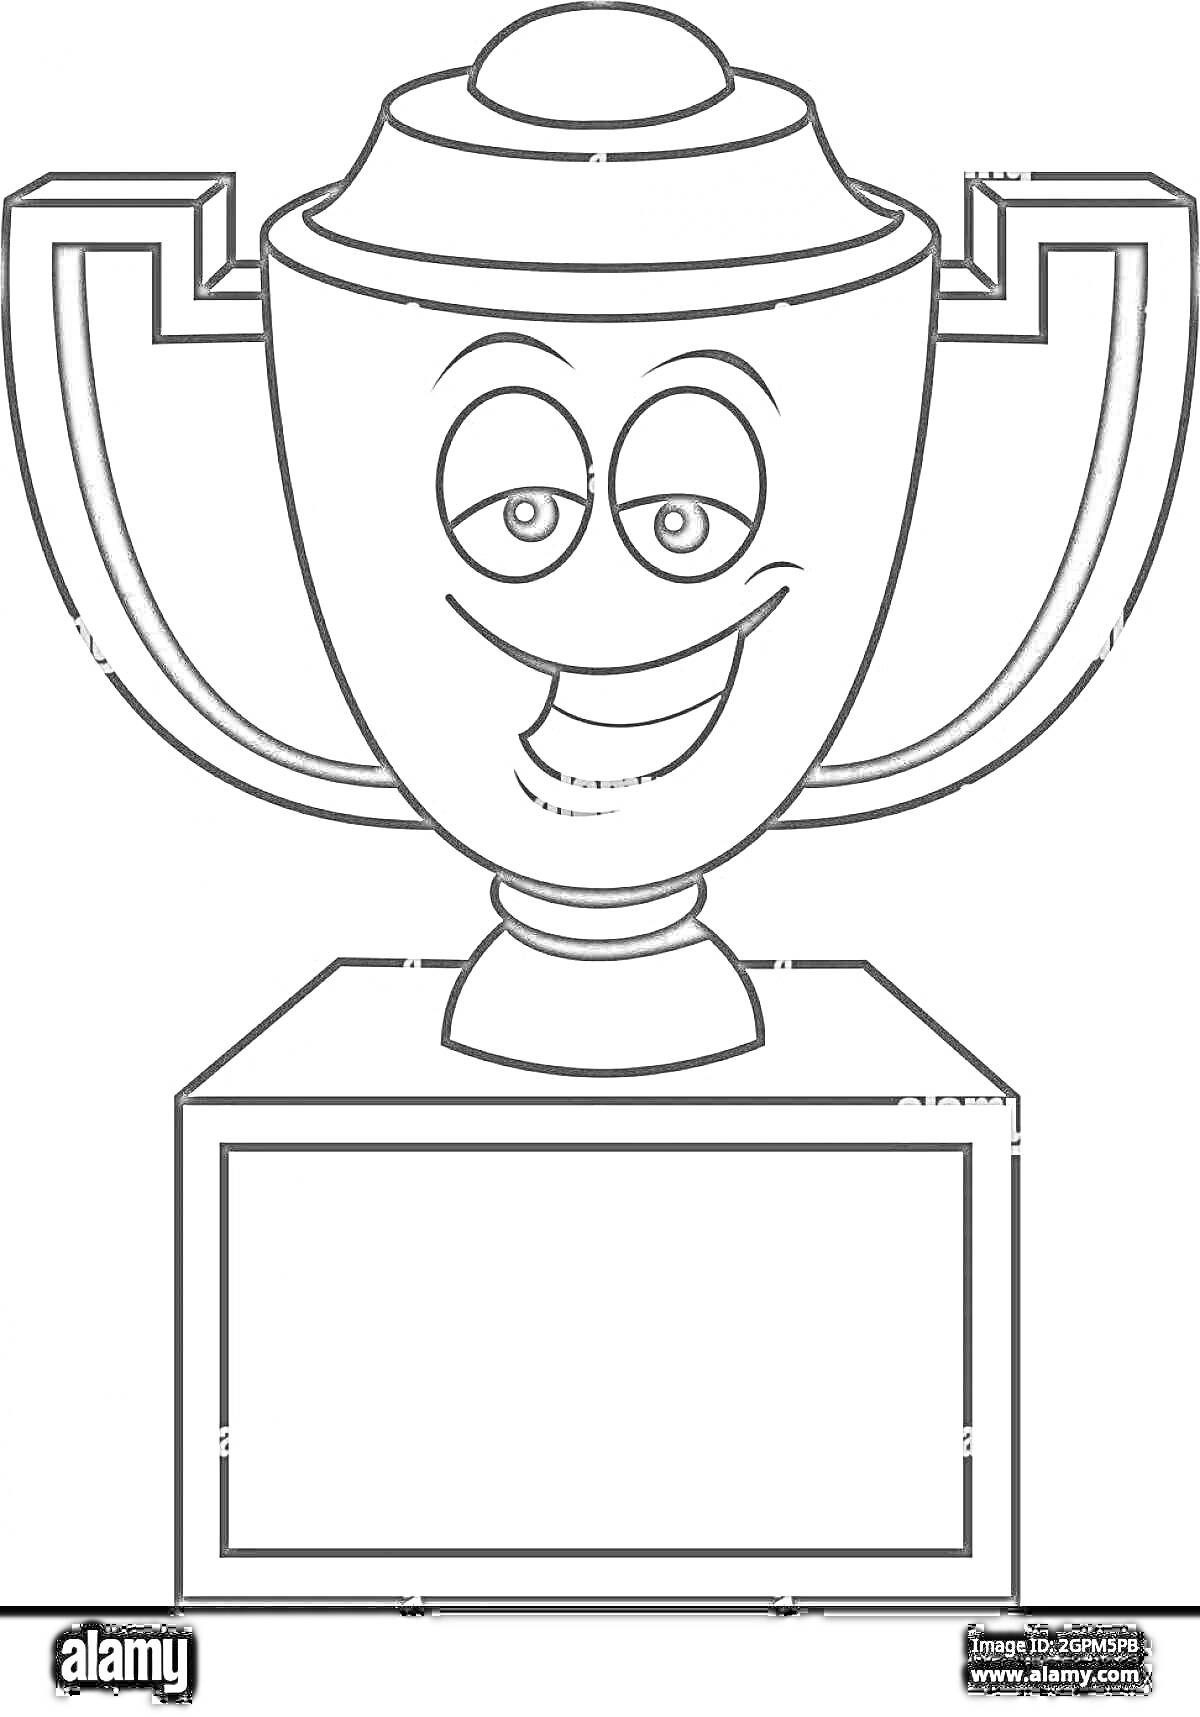 Раскраска Кубок победителя с улыбающимся лицом на пьедестале